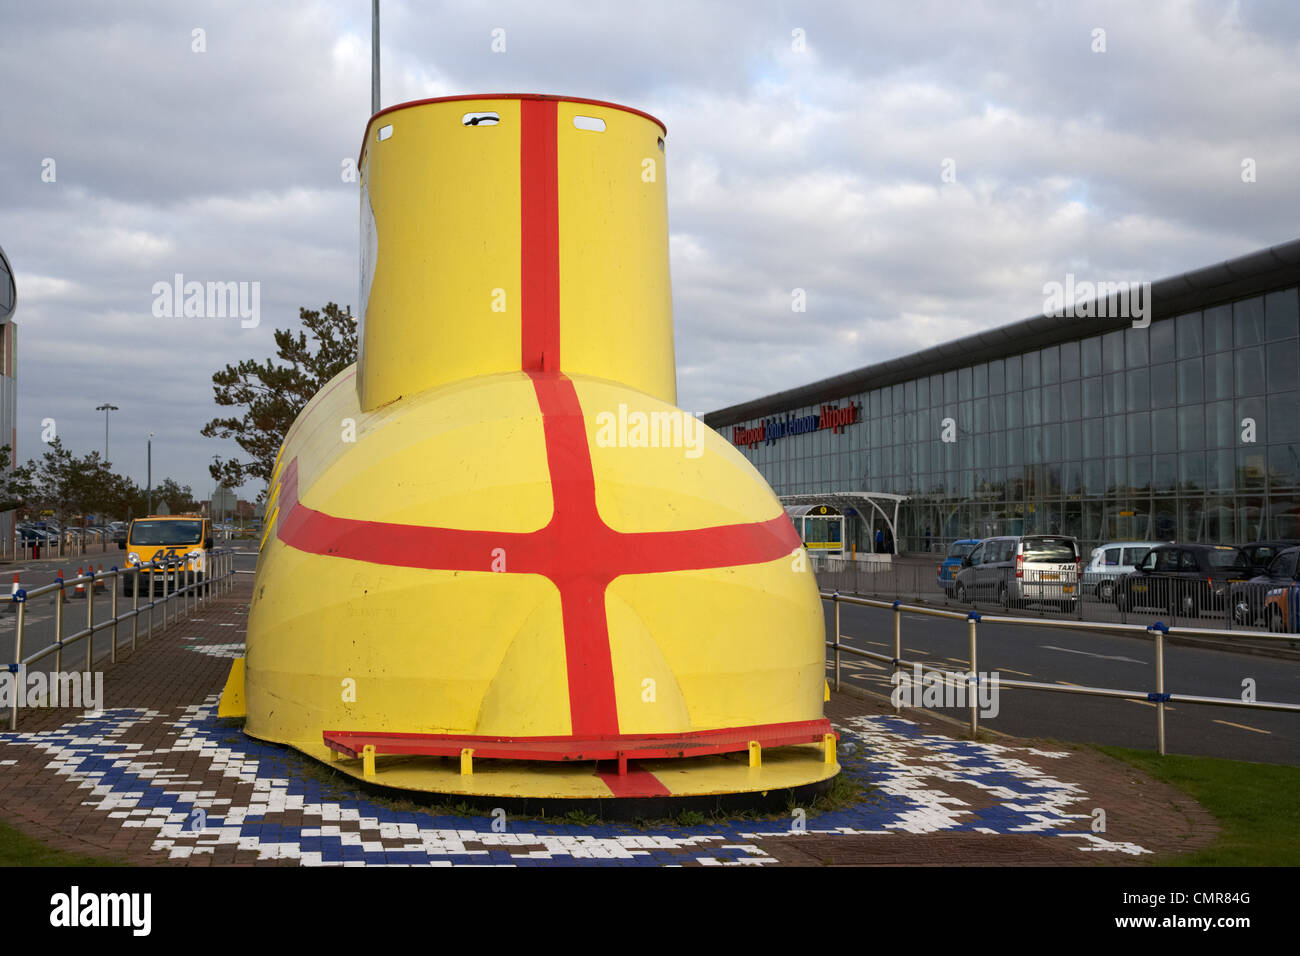 Le sous-marin jaune des Beatles à l'extérieur de la sculpture l'aéroport john Lennon de Liverpool Merseyside uk. Banque D'Images